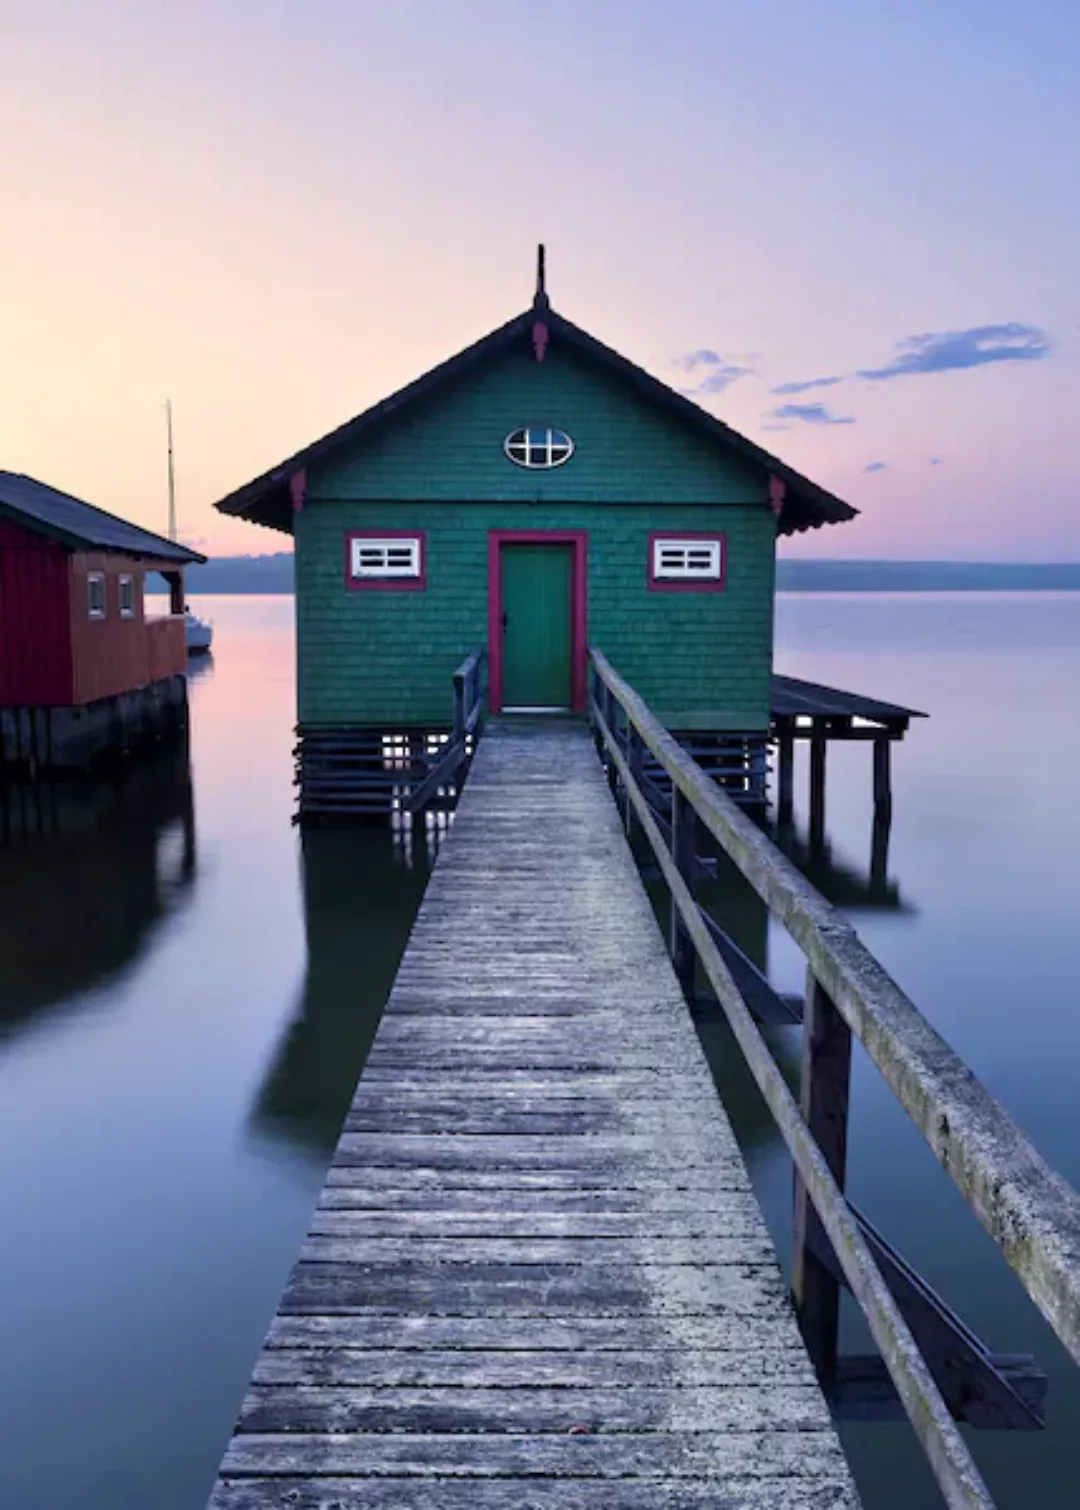 KOMAR Vlies Fototapete - Das grüne Bootshaus - Größe 200 x 280 cm mehrfarbi günstig online kaufen